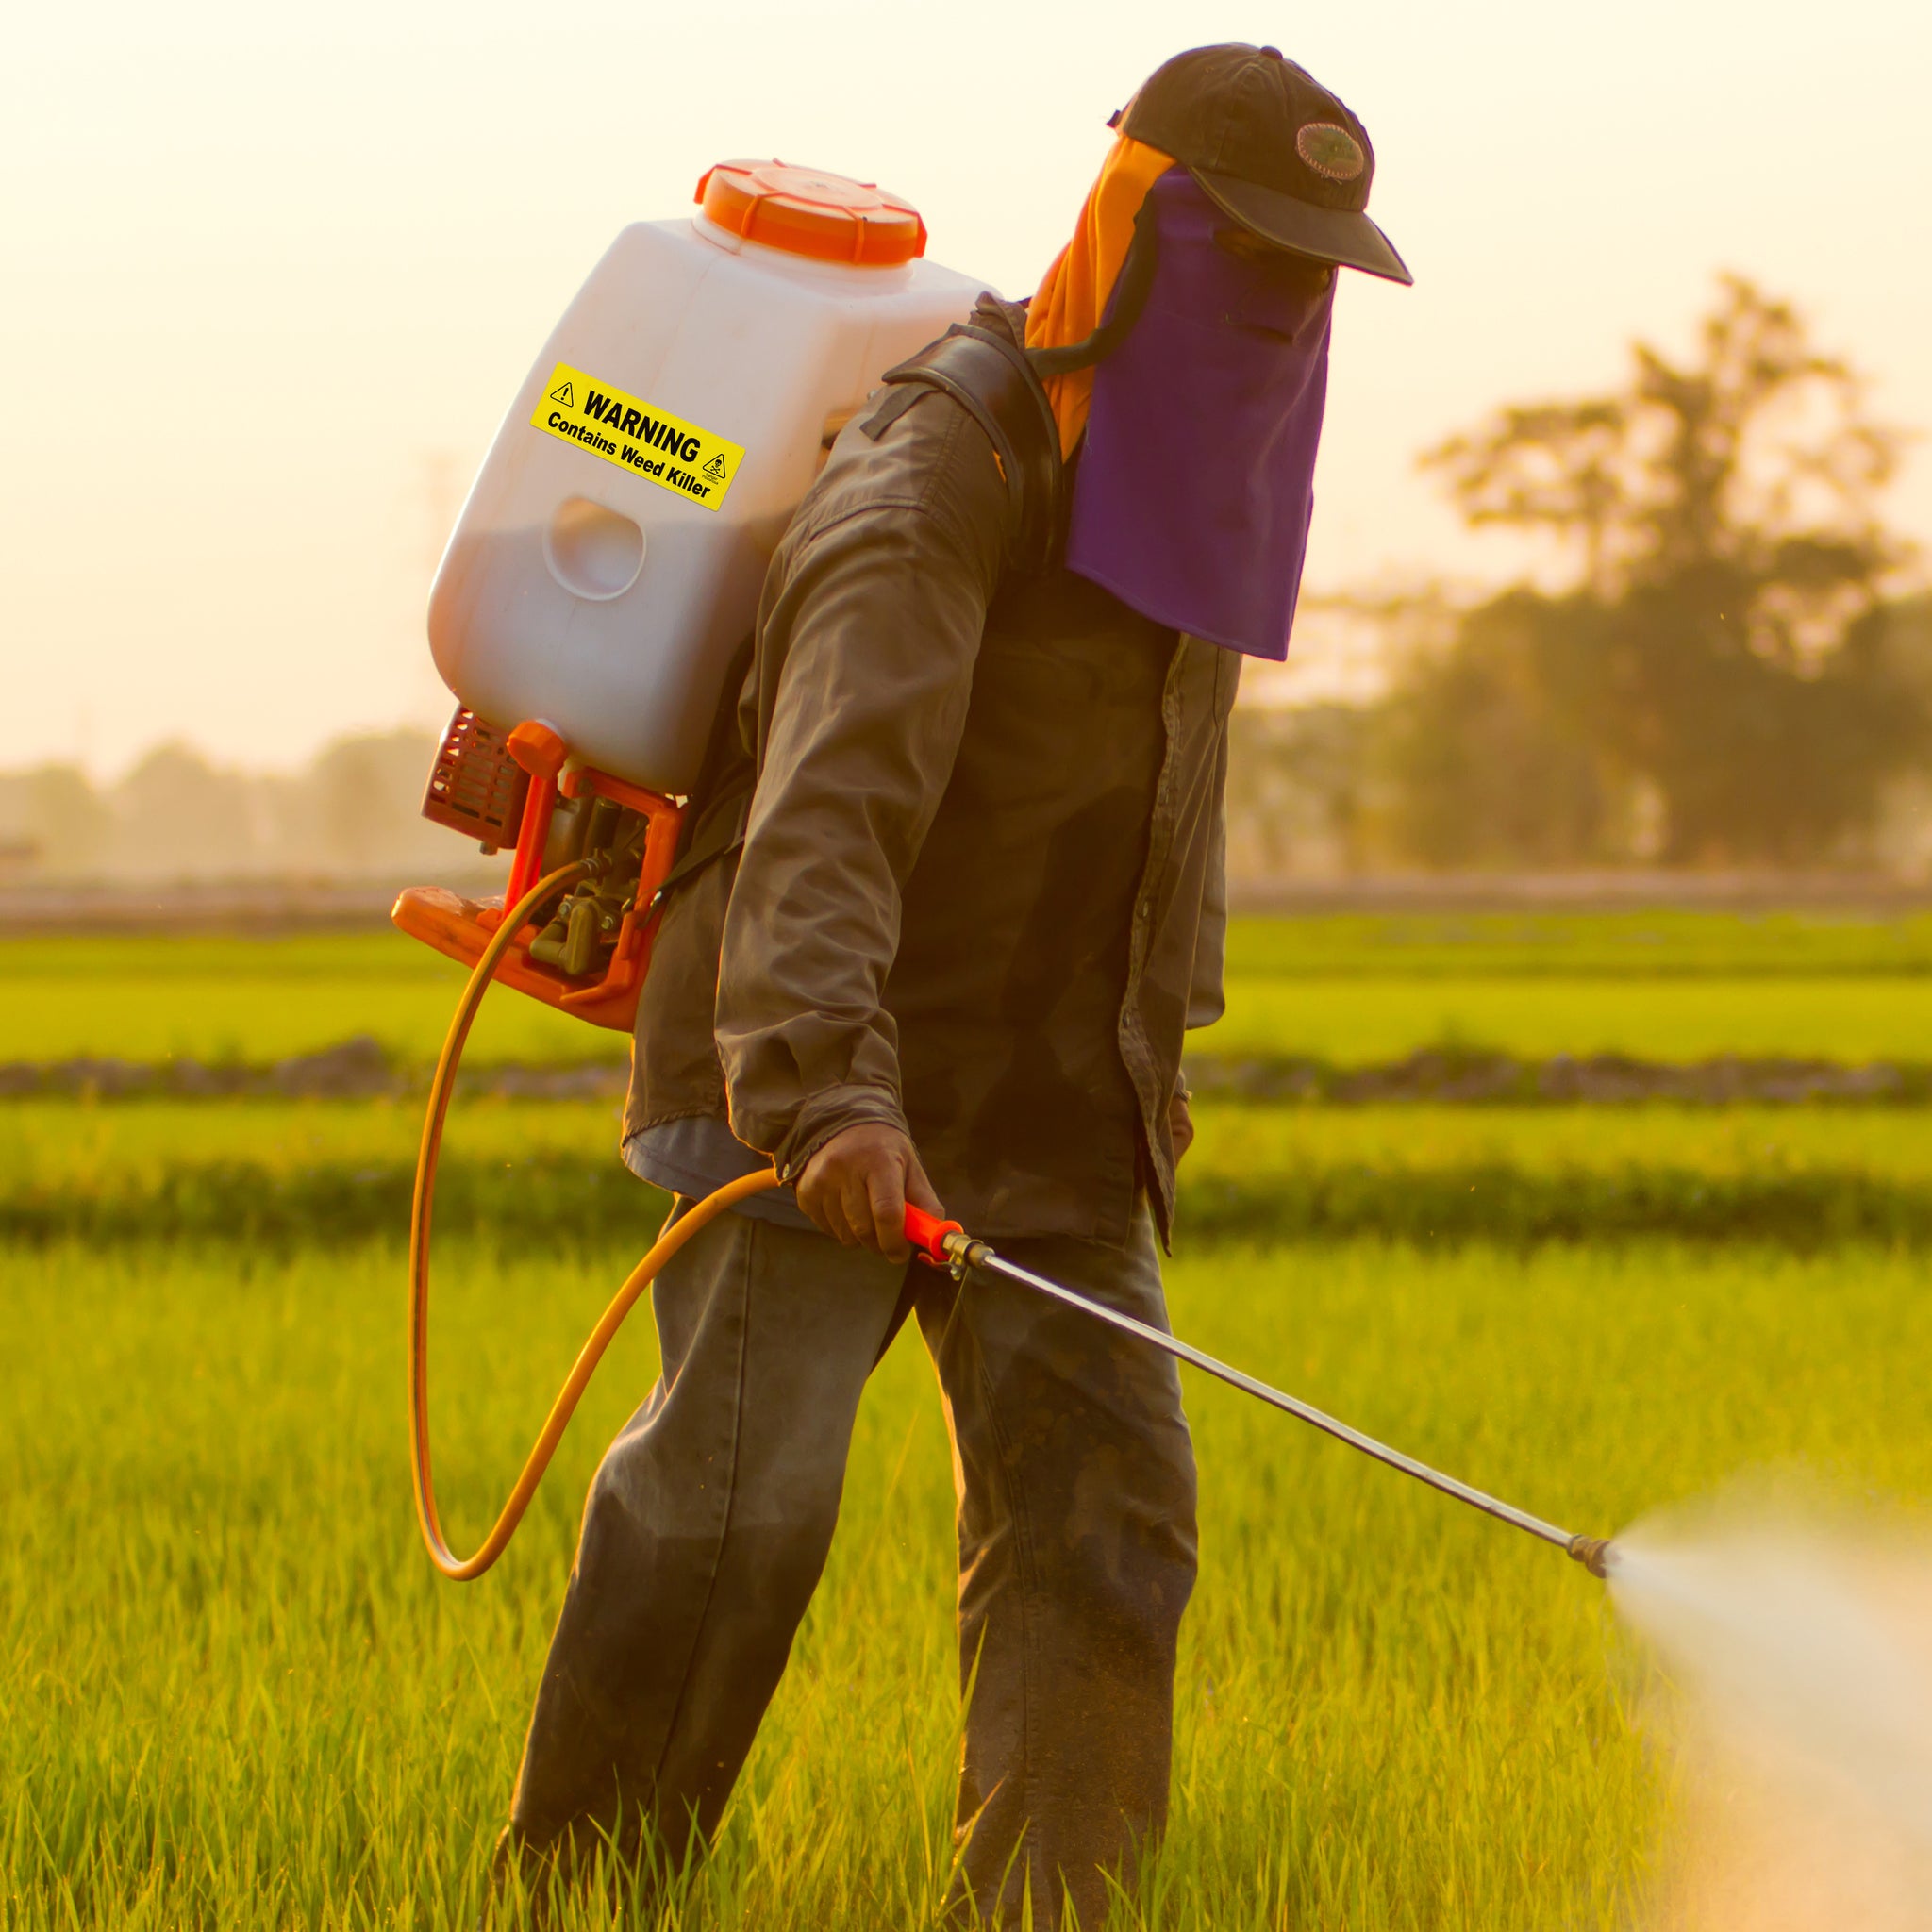 Pump Sprayer Label - Variety Pack:  Fertilizer, Herbicide, Weed Killer, Pesticide - 2 of Each, 8 Labels Total